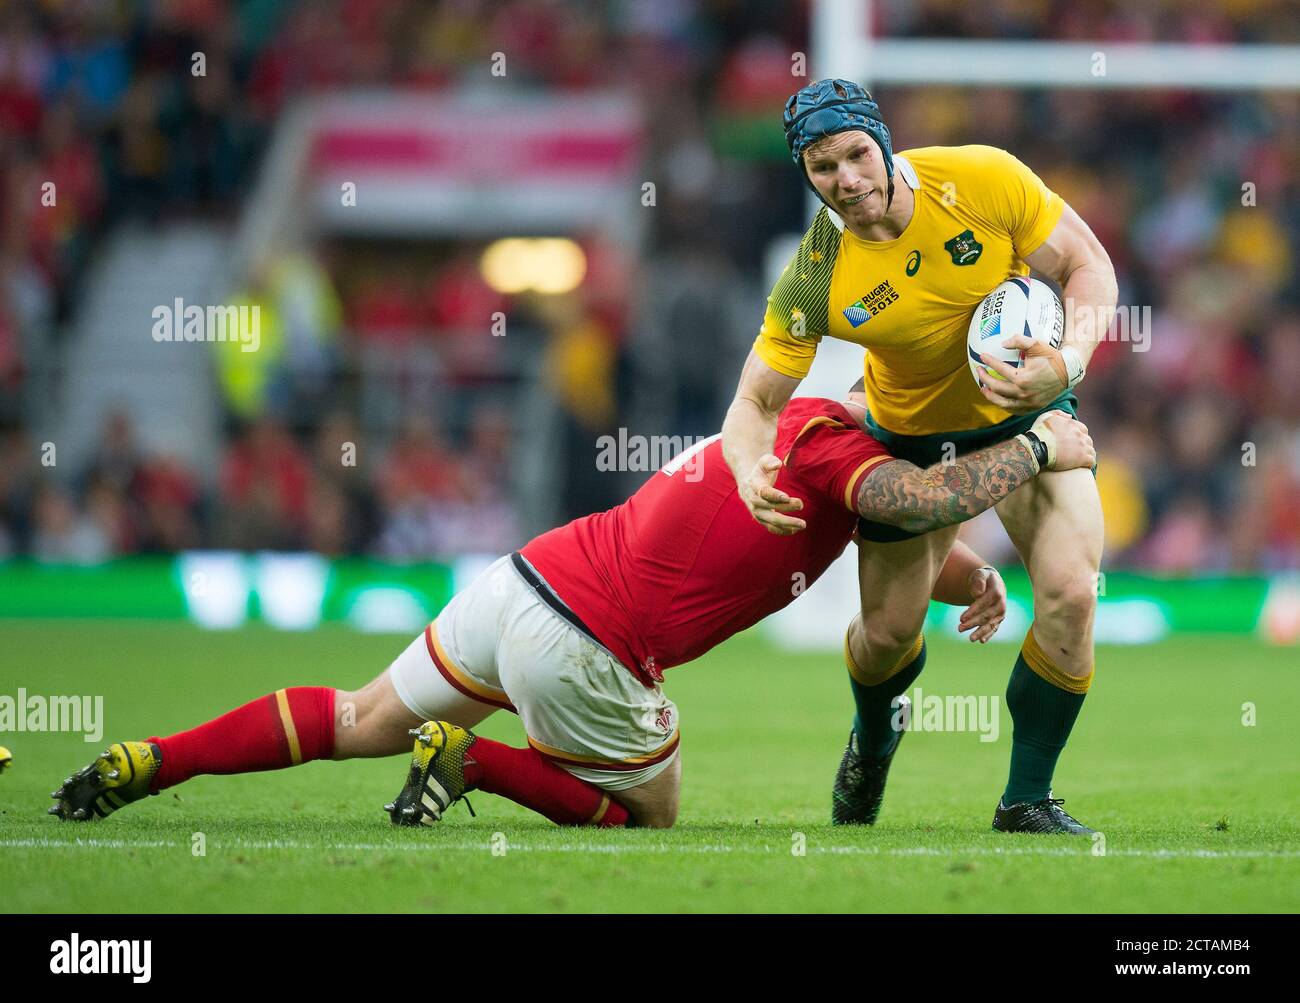 David Pocock wird von Paul James angegangen Australien gegen Wales Rugby World Cup 2015 Bildquelle: MARK PAIN / ALAMY Stockfoto